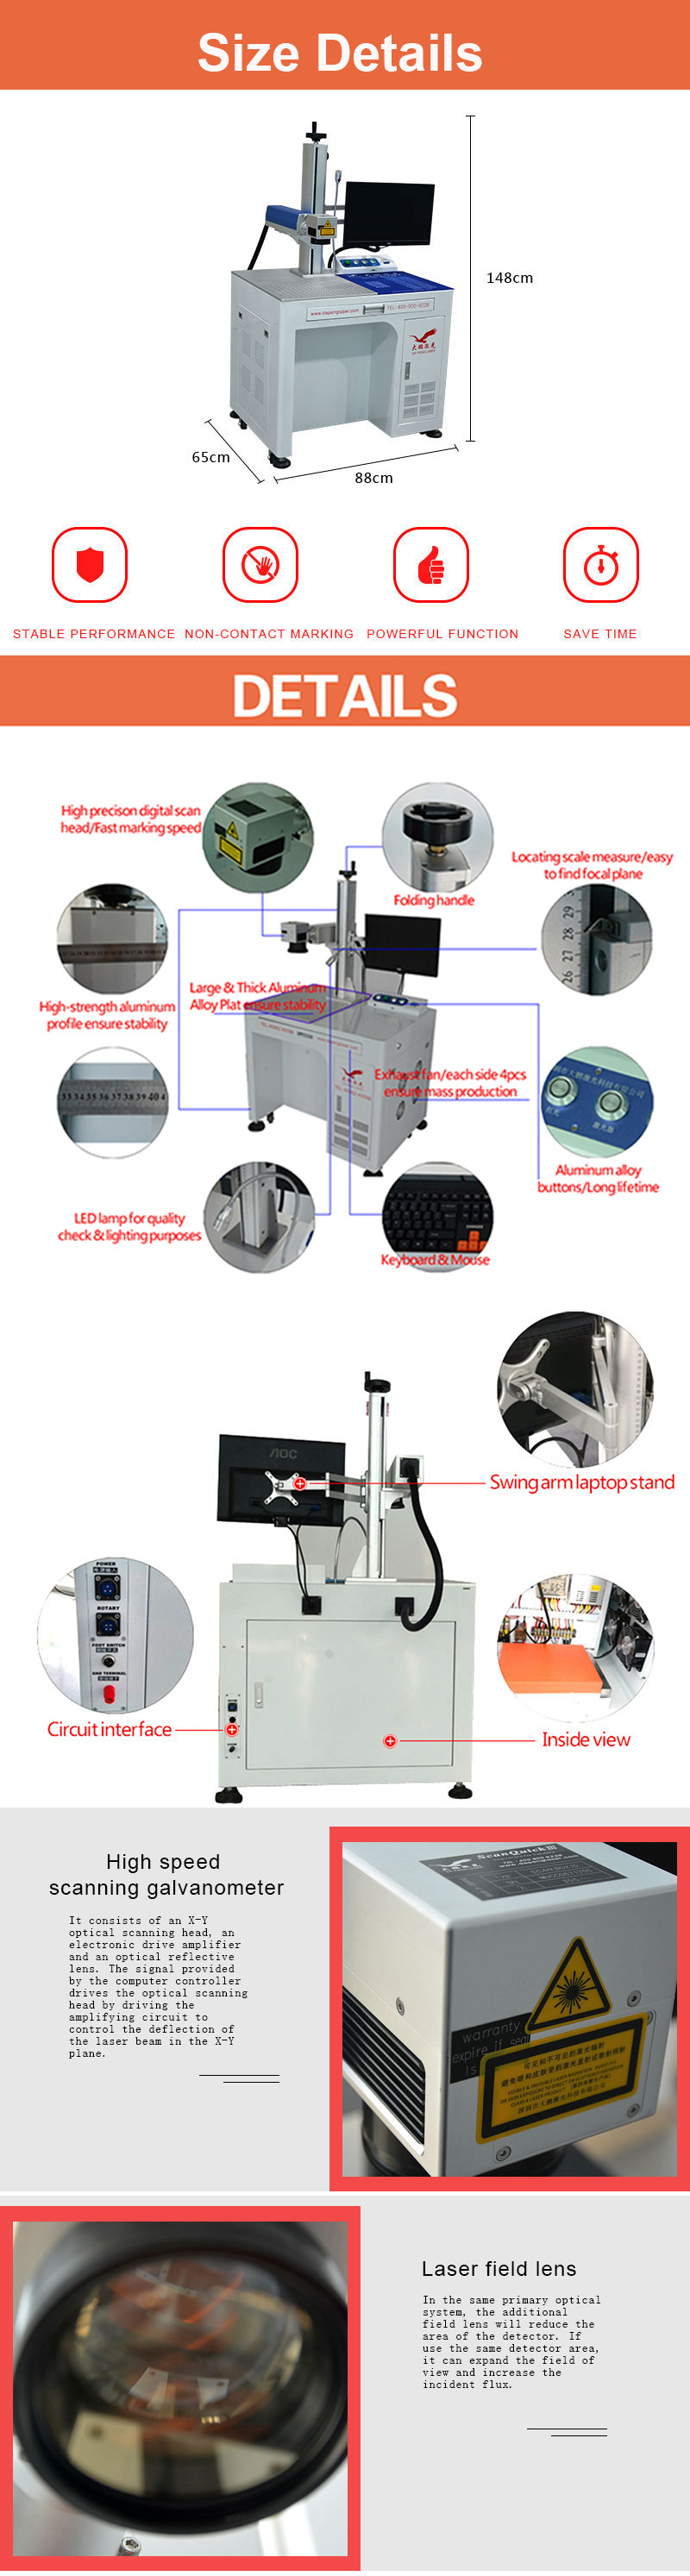 20 Watt Fiber Laser Marking Machine